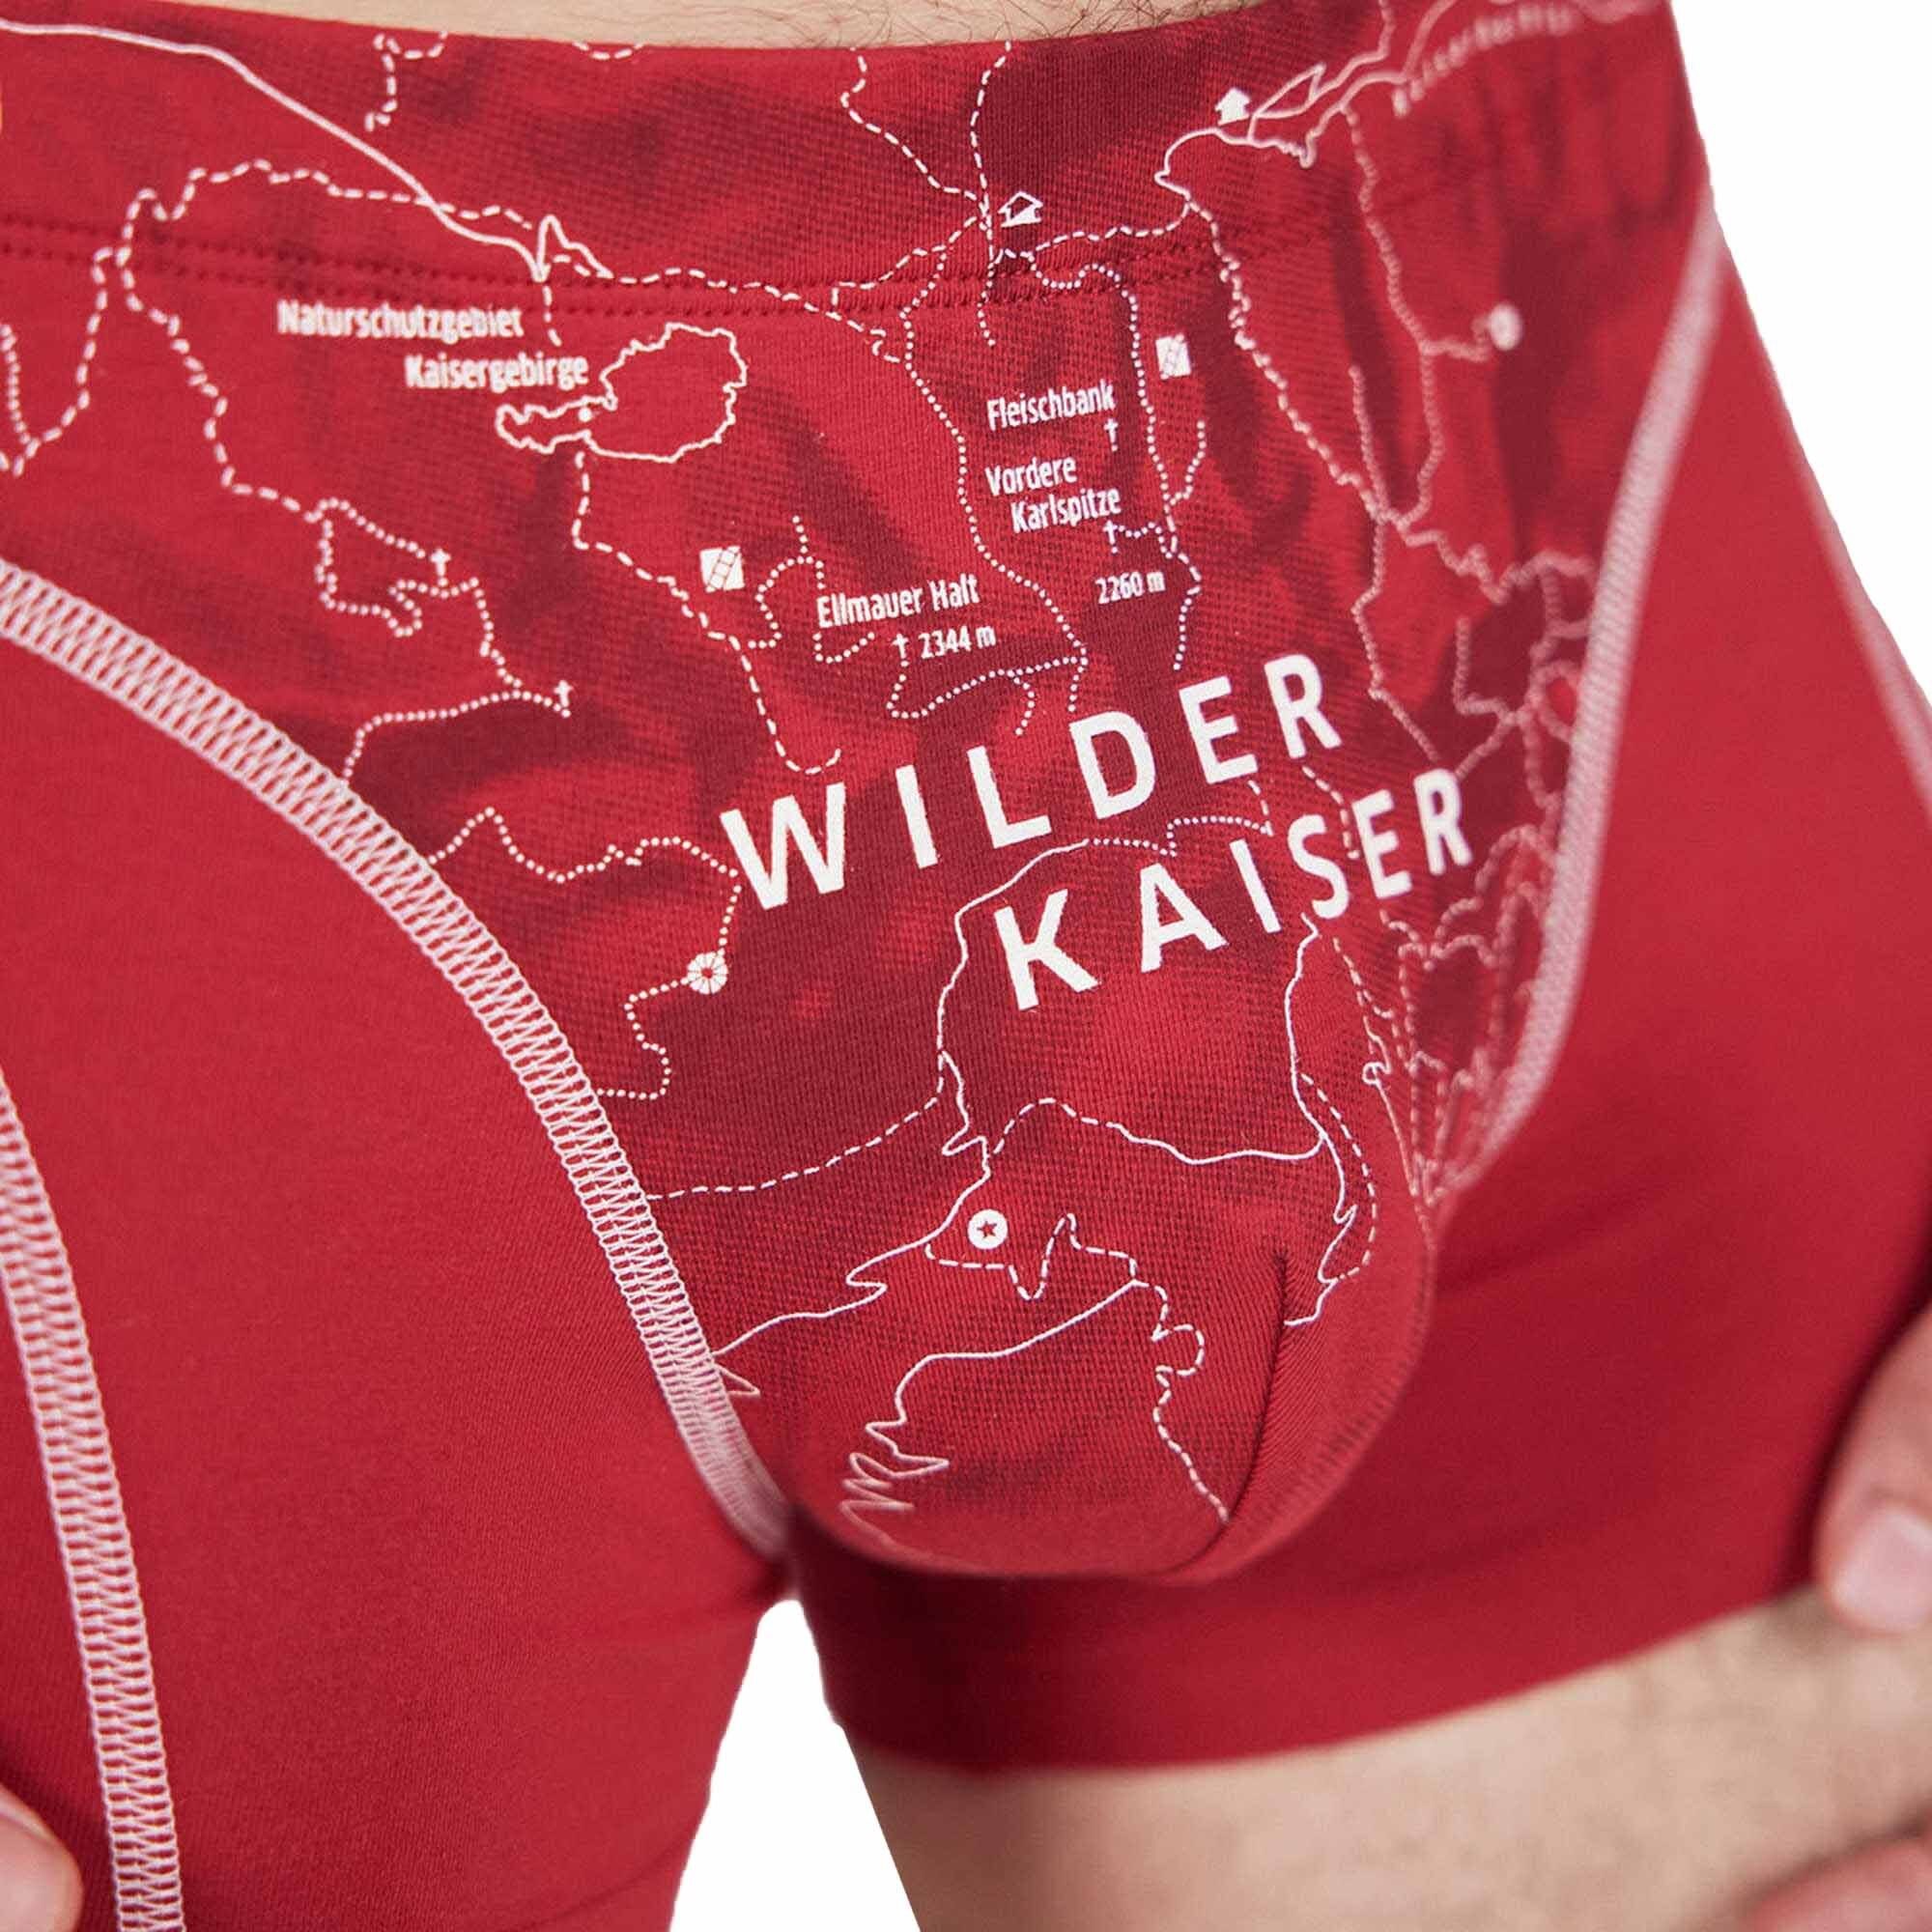 Boxershorts Print, Kaiser Wilder Fleck Boxer Shorts, - Herren (Kaminrot) Bio-Baumwolle schöner Erde Ein